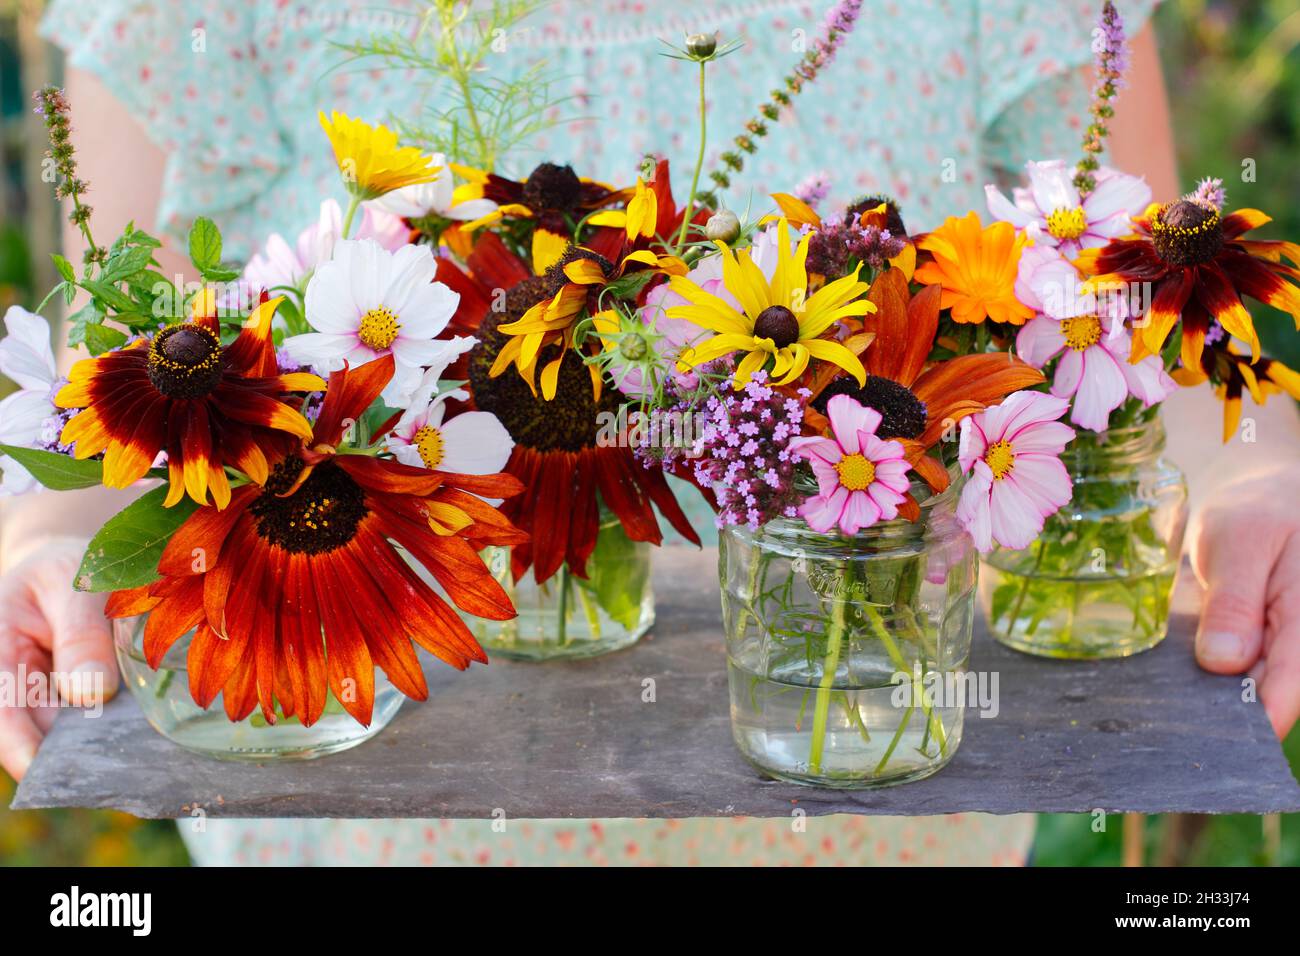 Femme avec des fleurs fraîches de son jardin de coupe - tournesol, rudbeckia, verbena, cosmos, menthe et pot marigold exposés dans des pots en verre recyclé.ROYAUME-UNI Banque D'Images